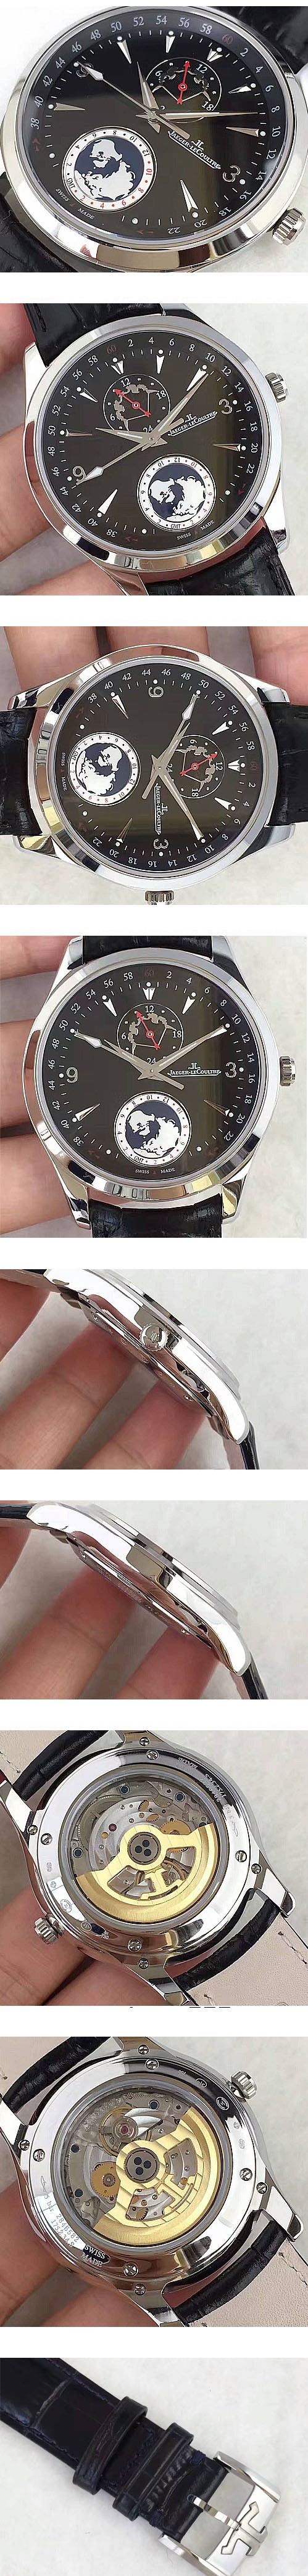 ジャガー·ルクルト腕時計の説明